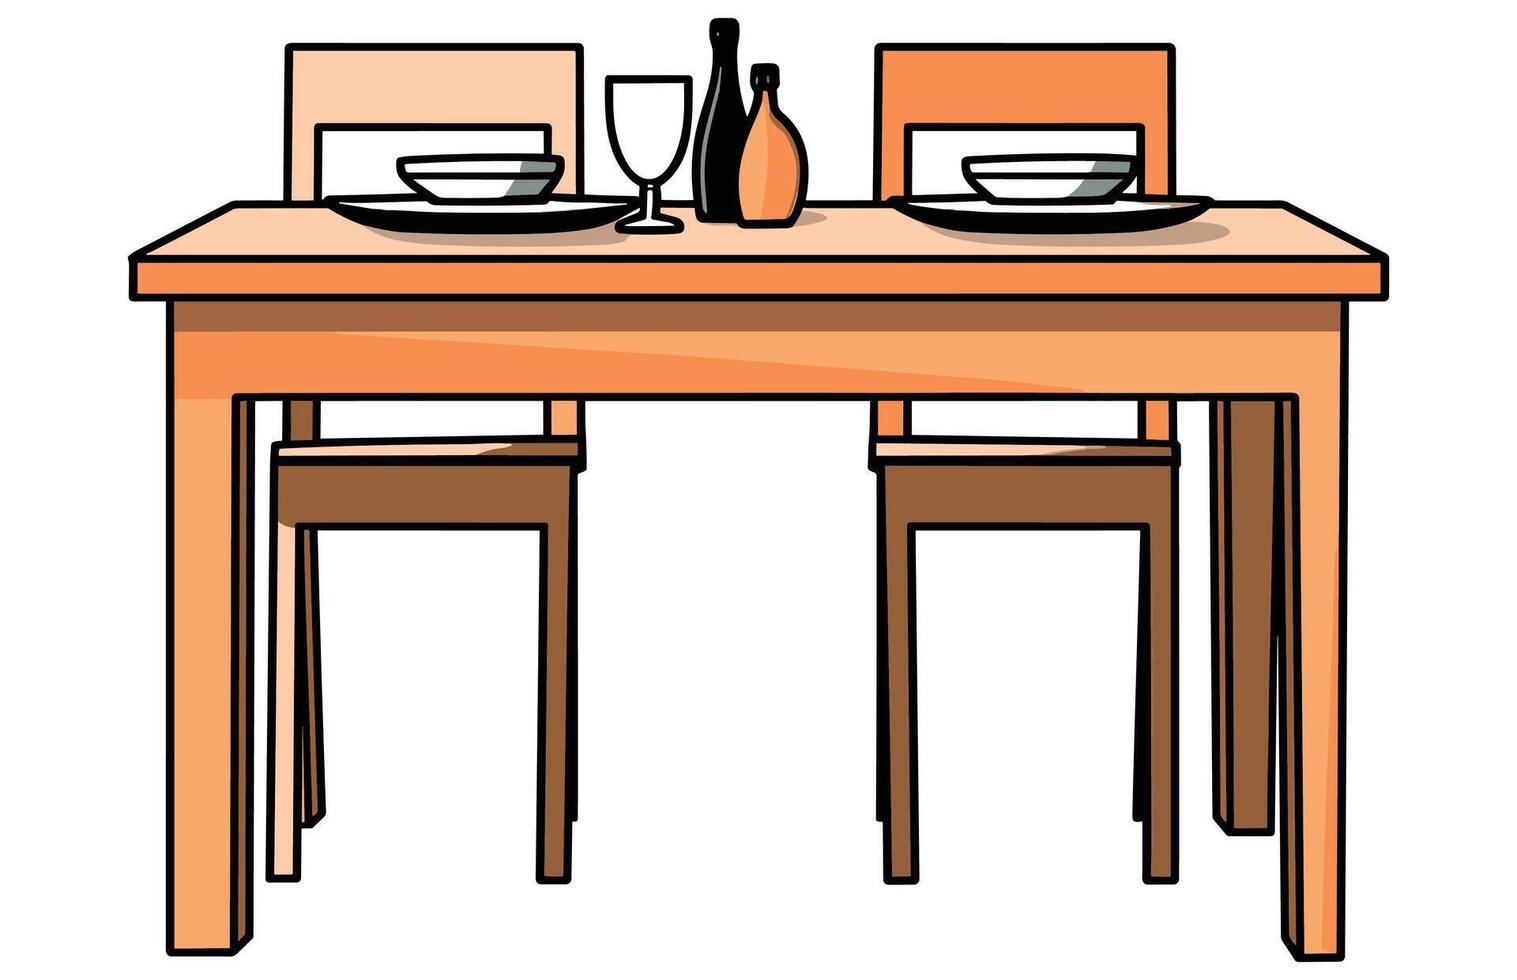 dining tafel en stoelen vector, tafels met stoelen voor dining illustratie vector